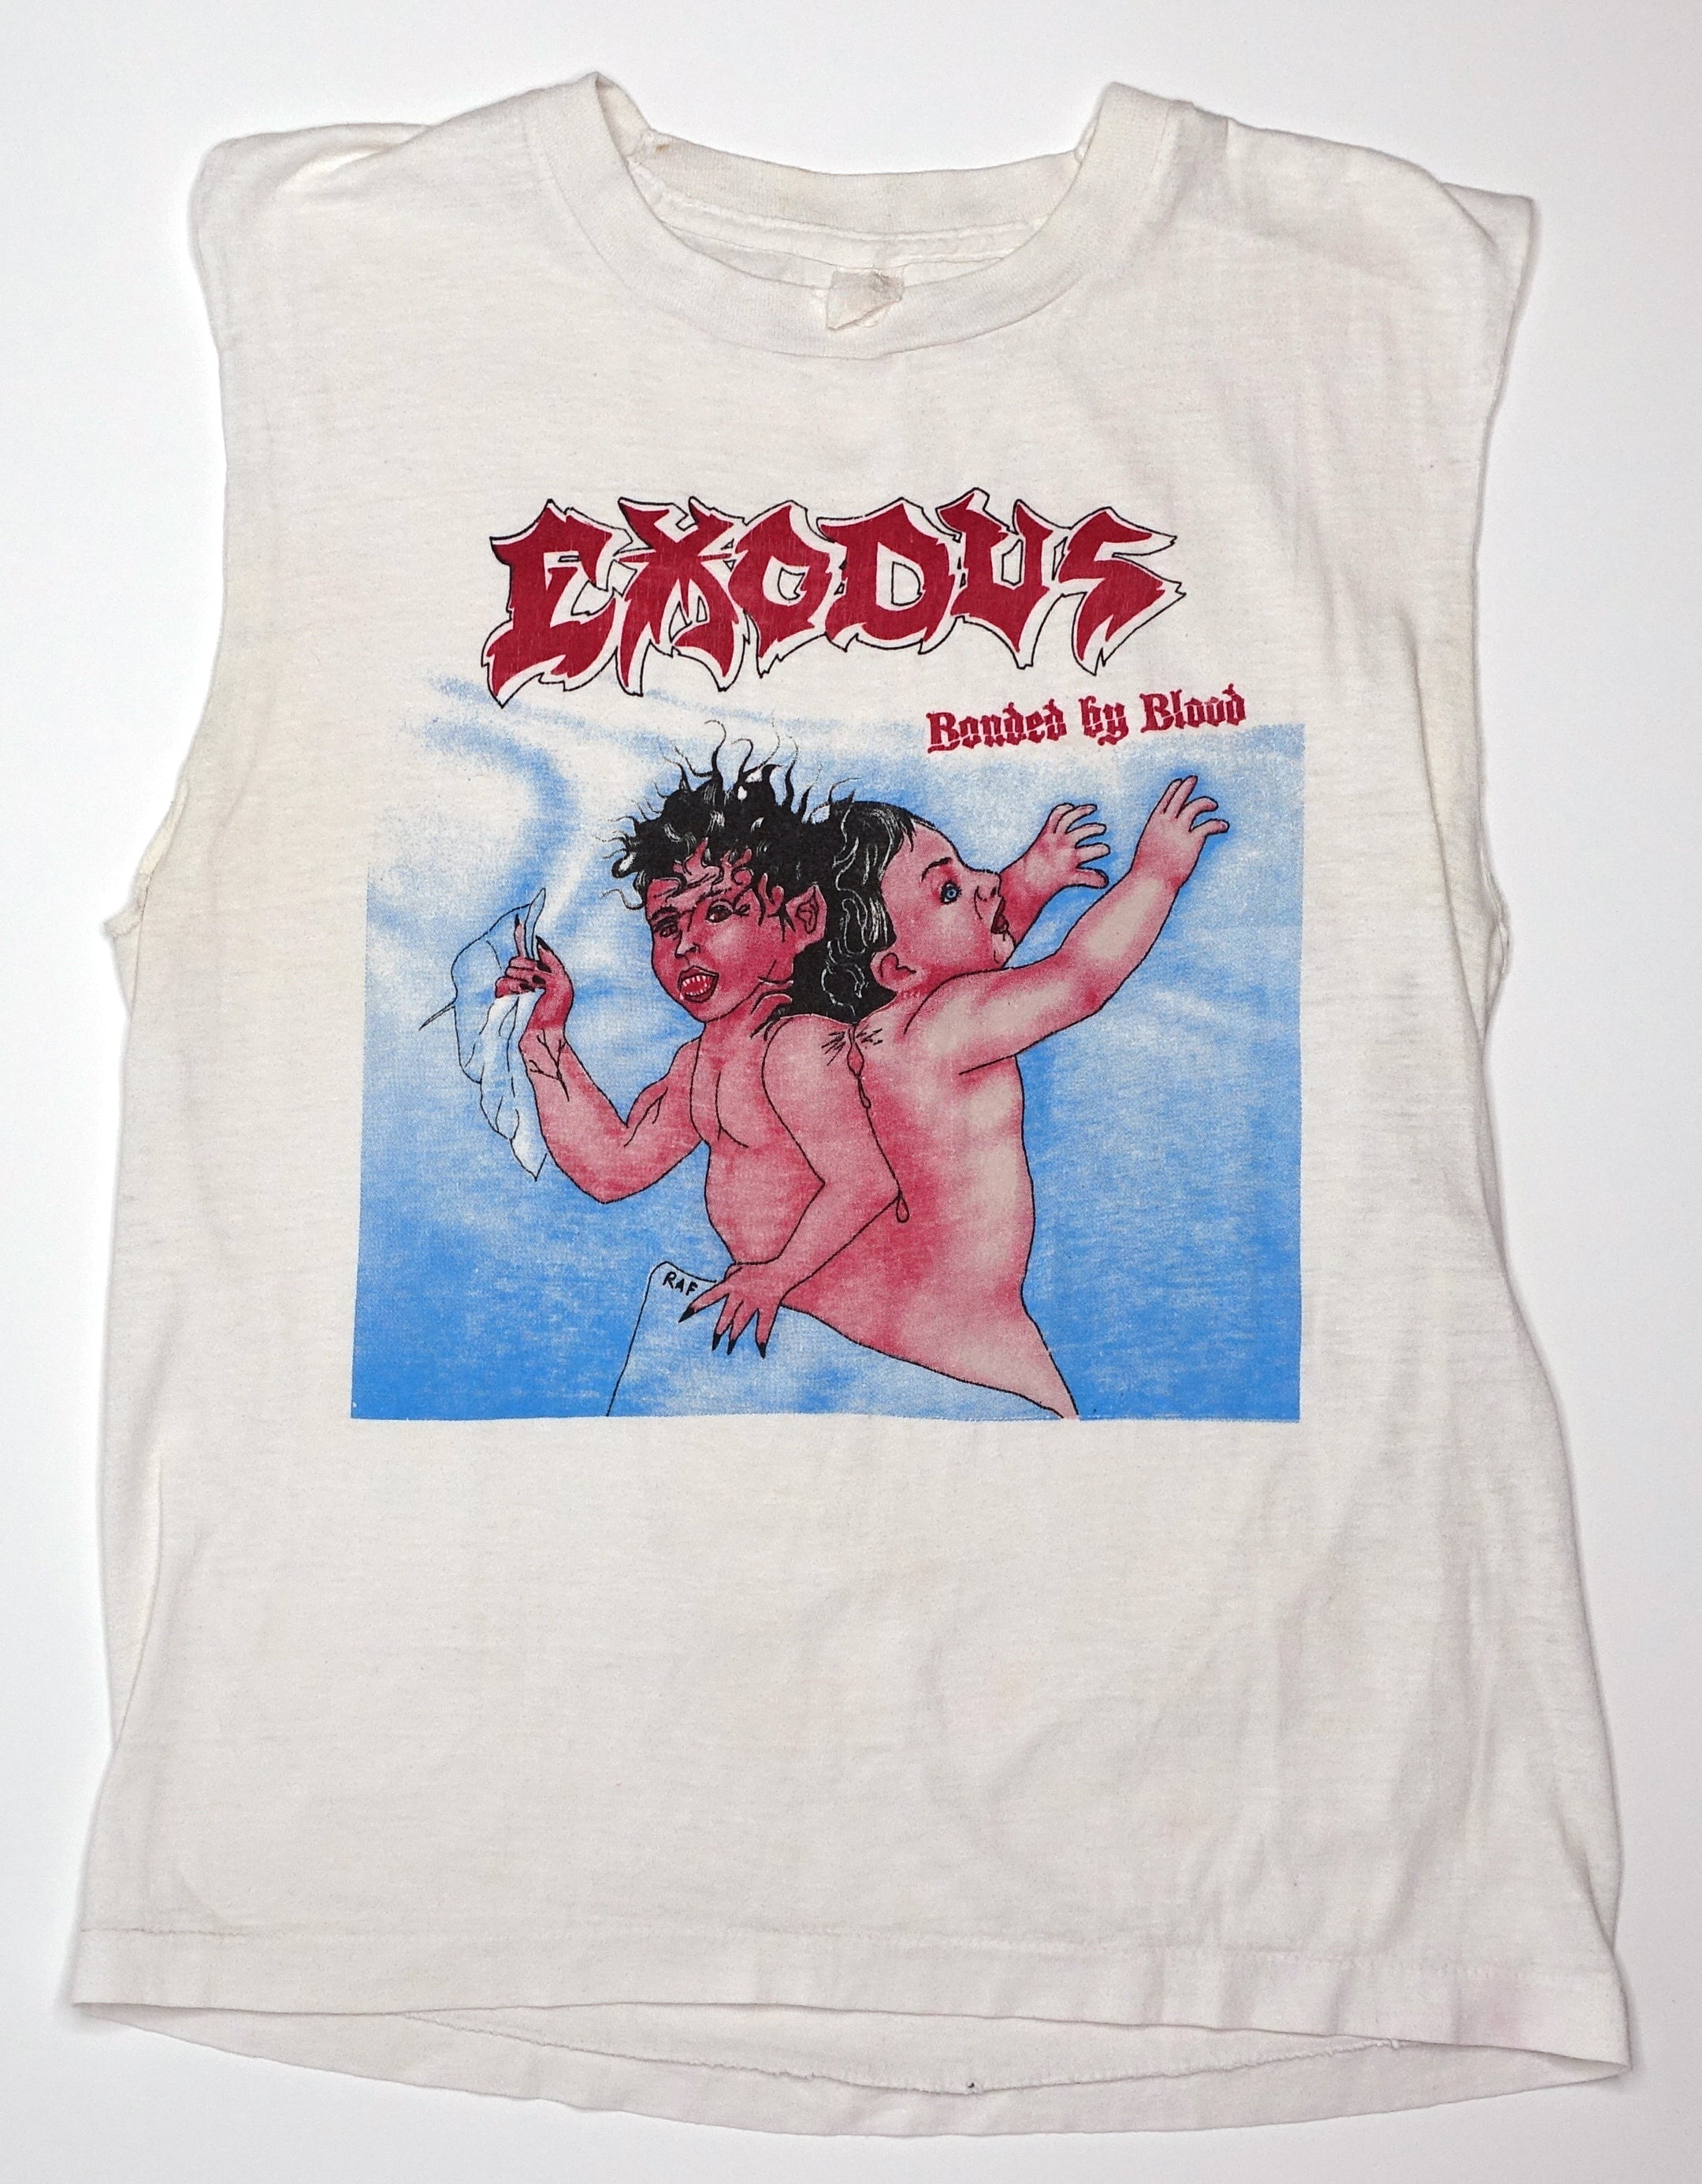 Exodus - Bonded By Blood 1985 Tour Shirt Size Medium